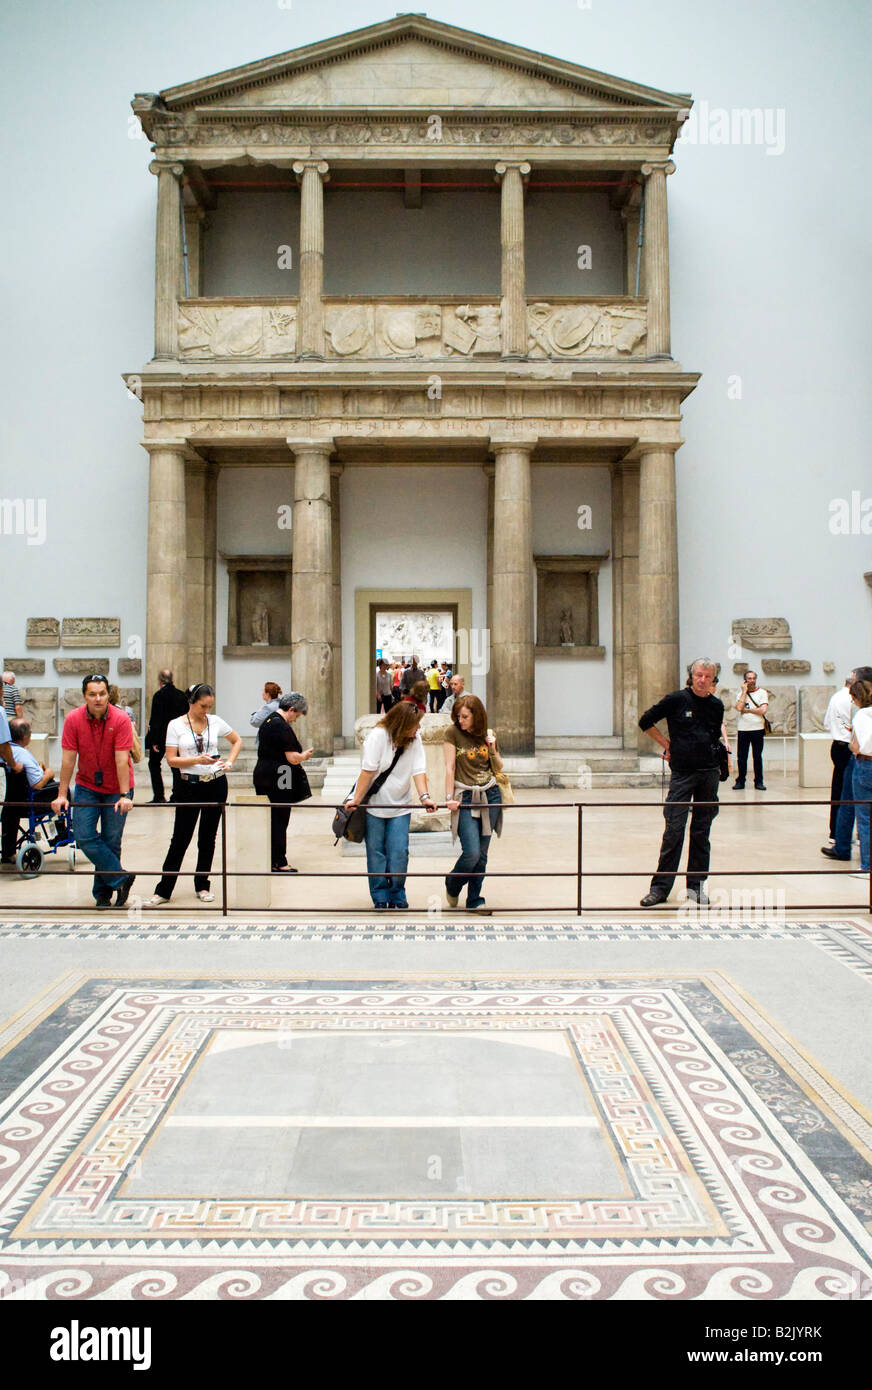 L'intérieur de la porte de Temple célèbre Musée Pergamon de Berlin Allemagne Banque D'Images